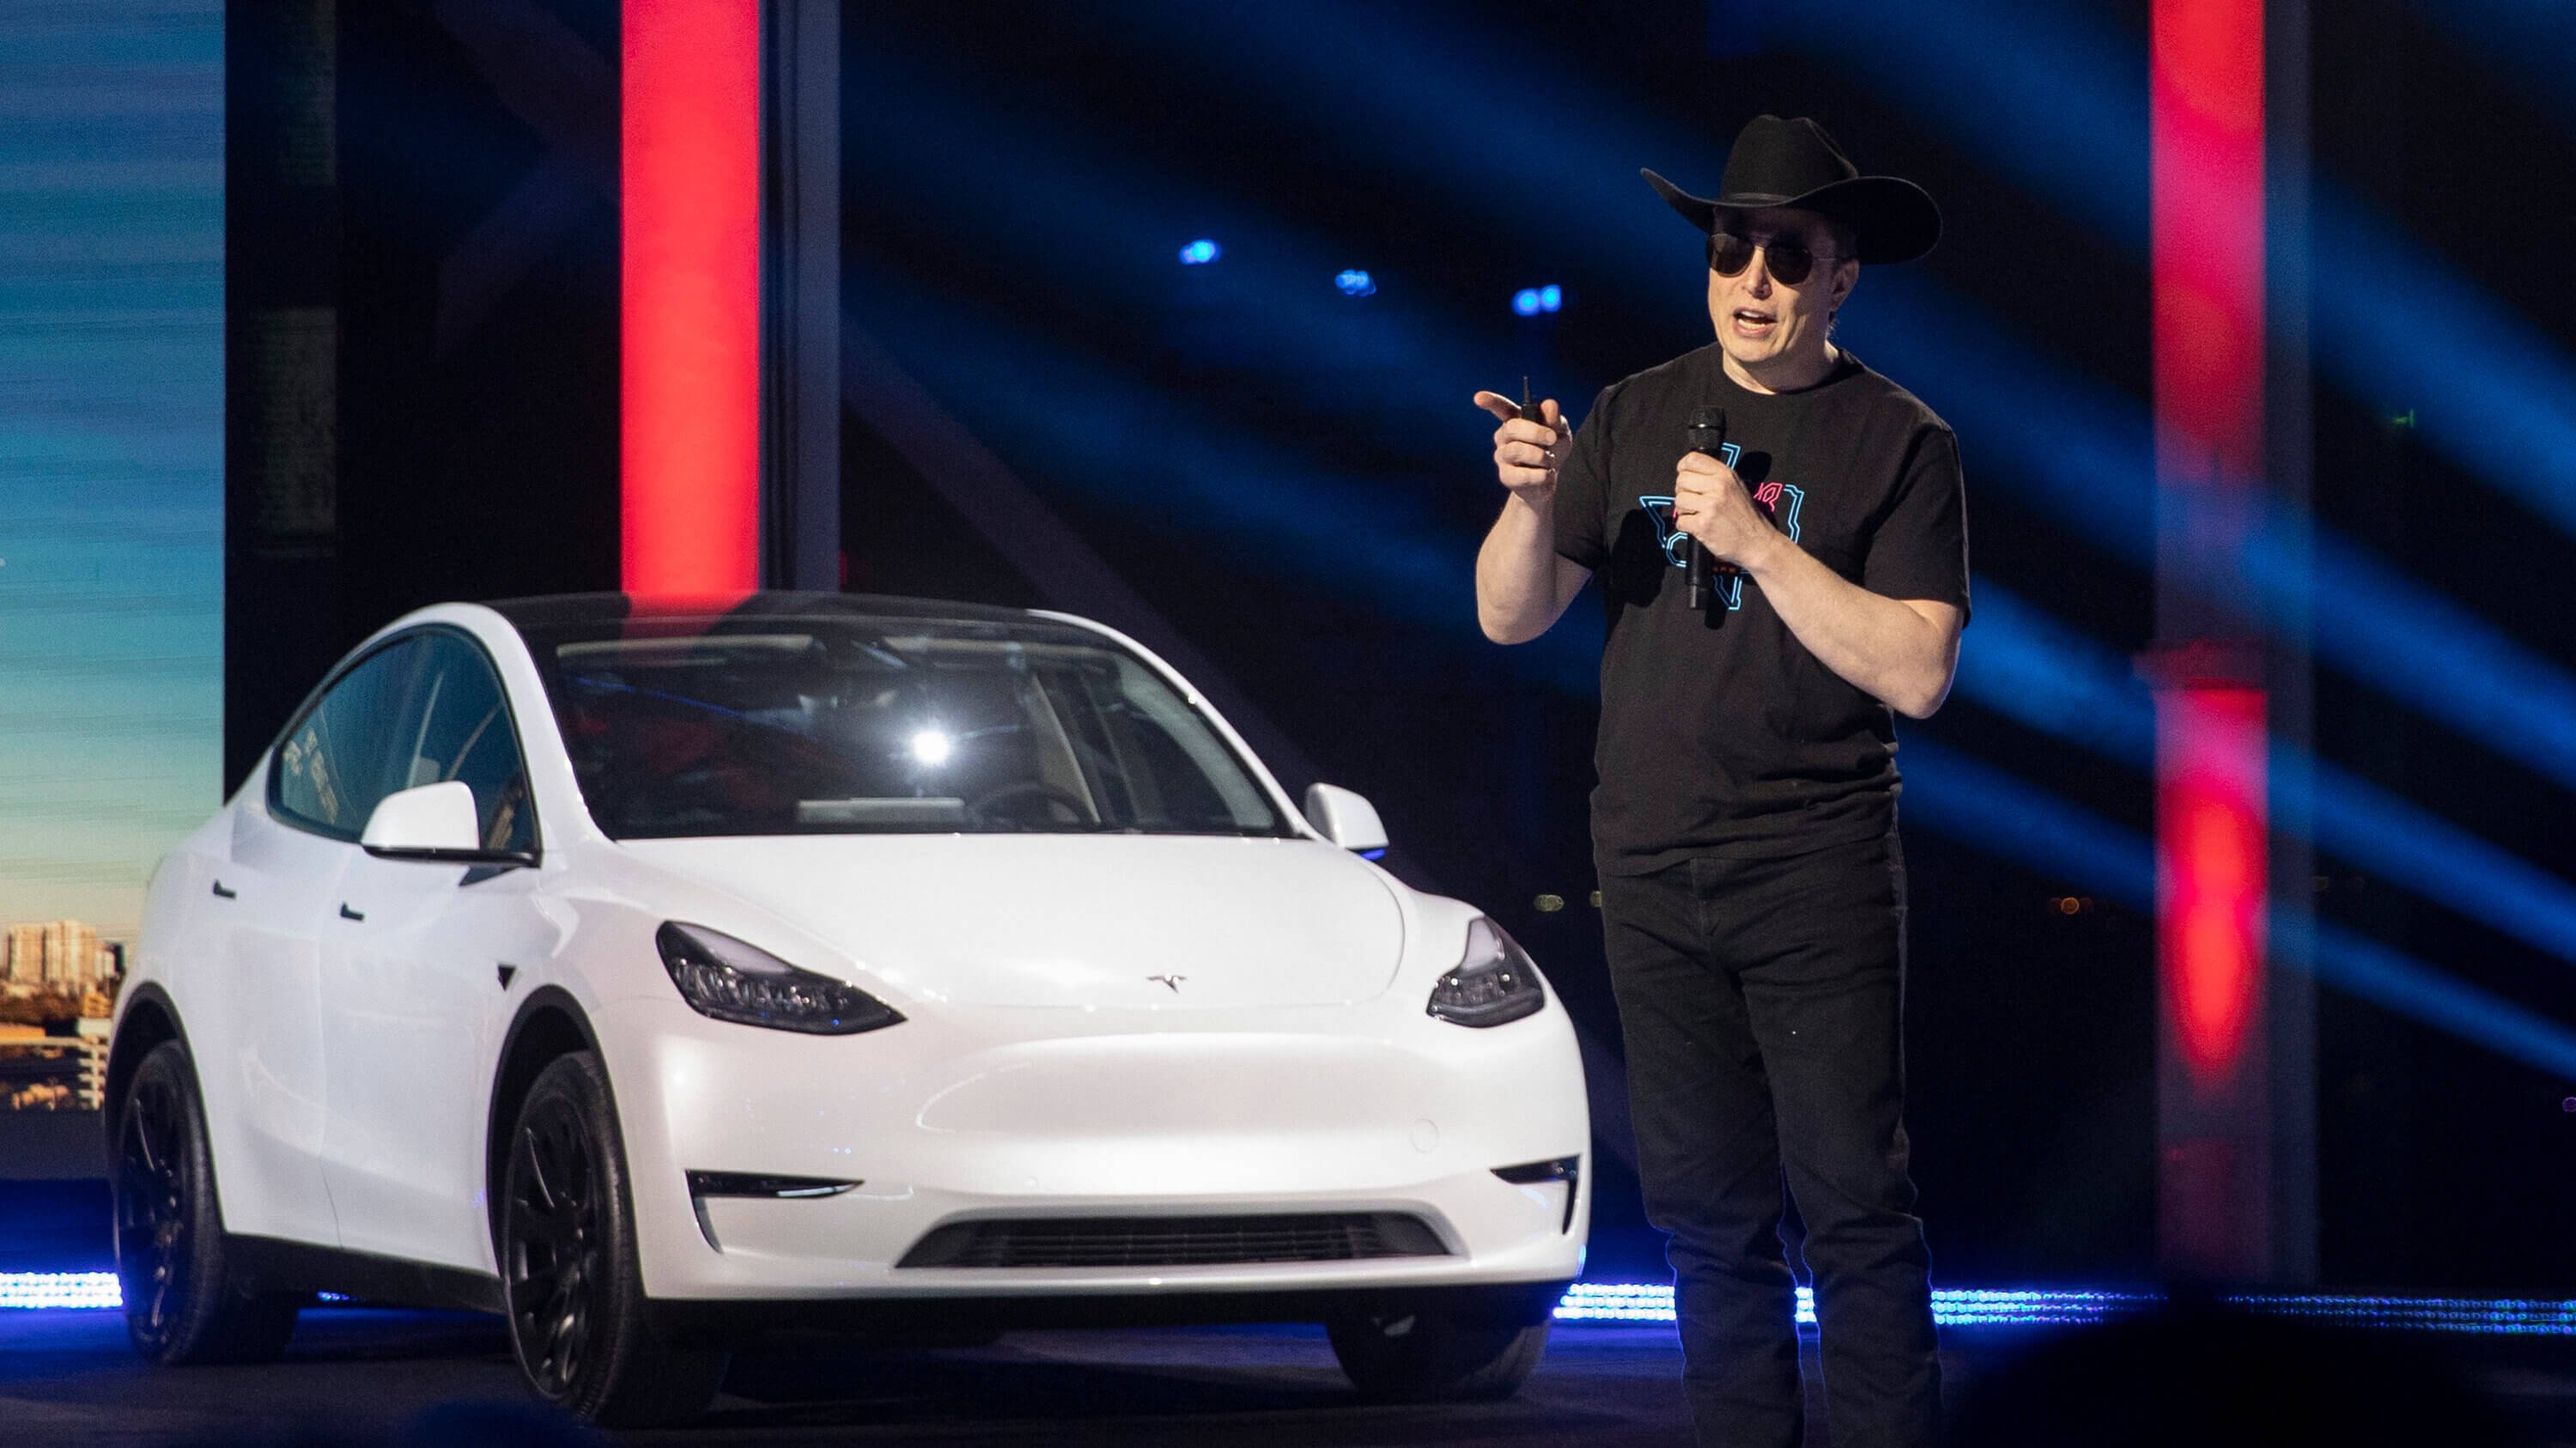 เจาะกลยุทธ์หั่นราครถ Tesla ทำไมพาบริษัททำกำไรแต่ต้นทุนต่ำลงเรื่อย ๆ